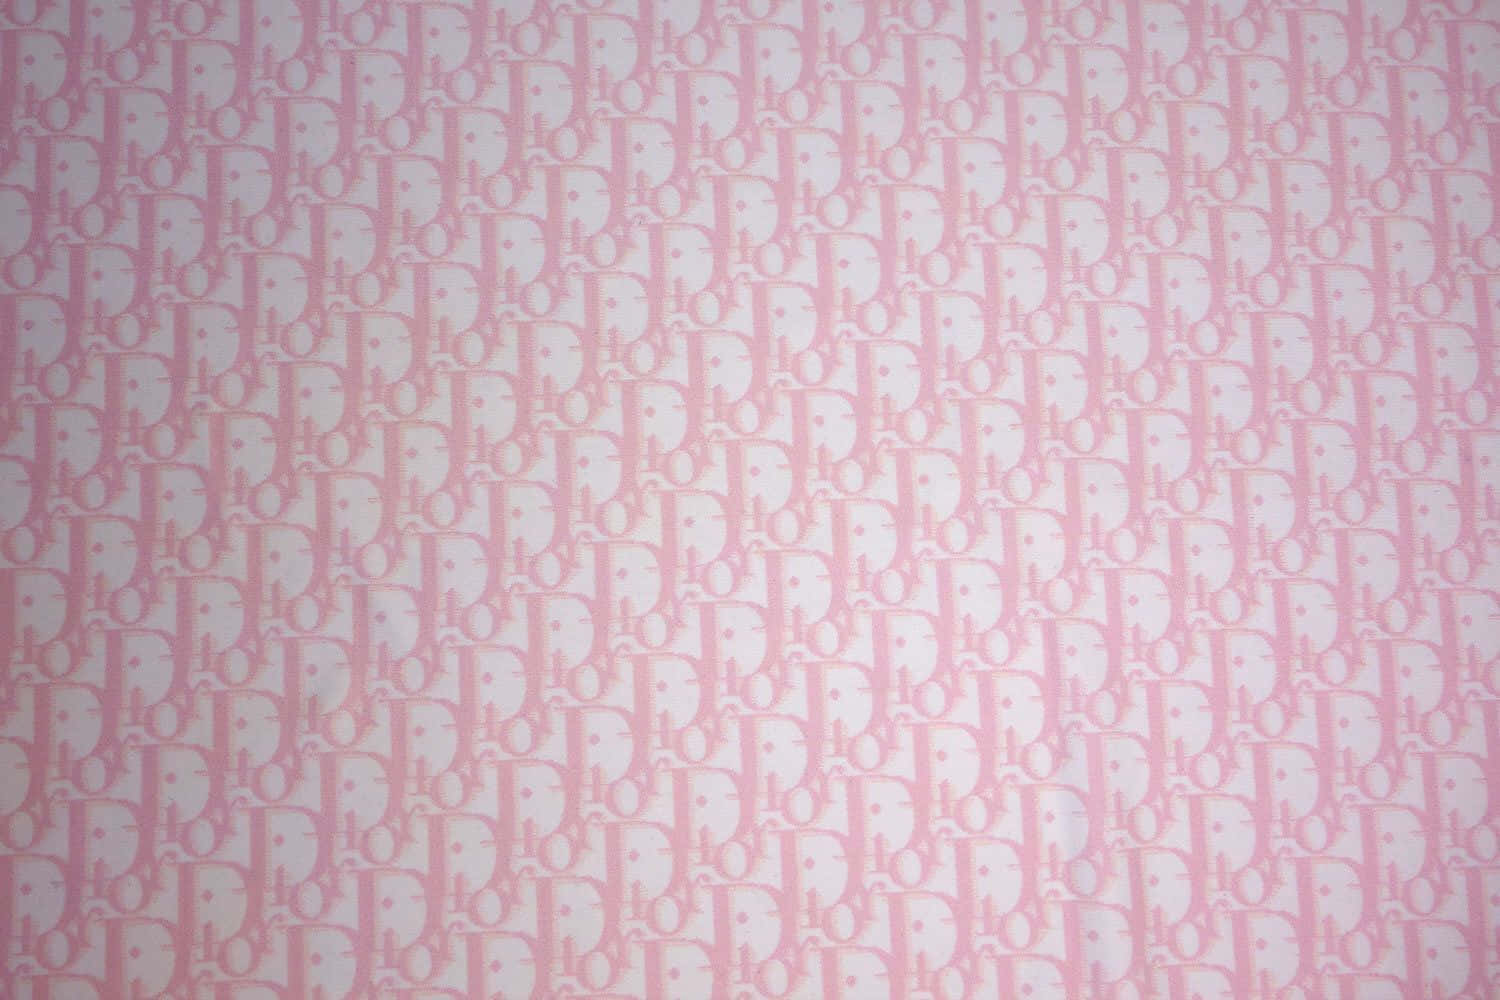 Bạn muốn biến màn hình của mình trở nên cá tính nhưng vẫn đầy quý phái? Hãy sử dụng Pink Dior Wallpaper. Với sắc hồng nữ tính nhưng cũng rất đẳng cấp, Pink Dior Wallpaper sẽ mang đến cho bạn một không gian làm việc hoặc giải trí đúng chất của thương hiệu Dior.